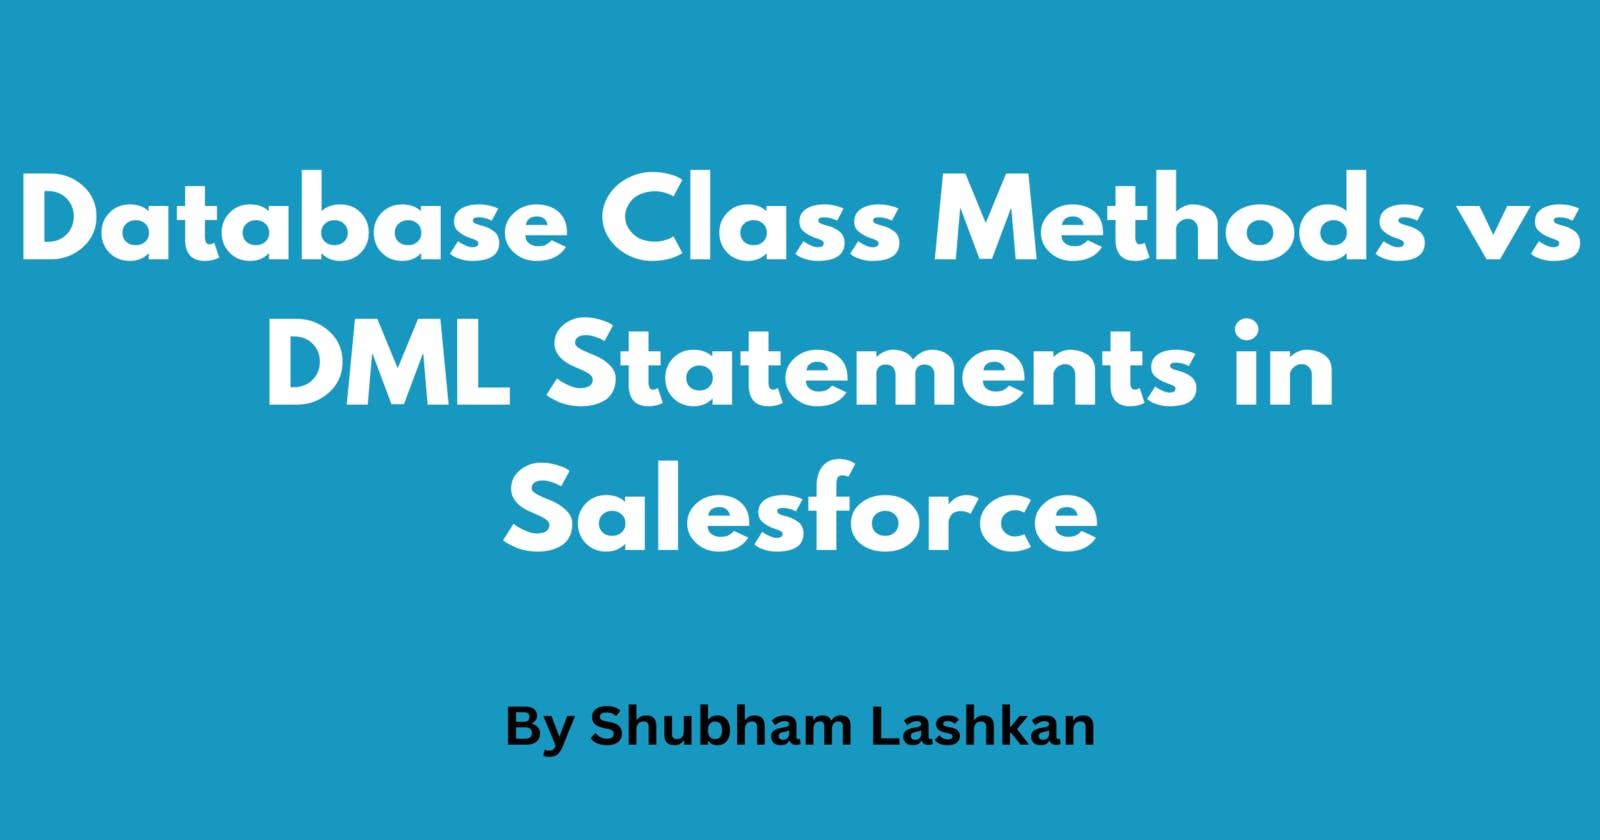 Database Class Methods vs DML Statements in Salesforce